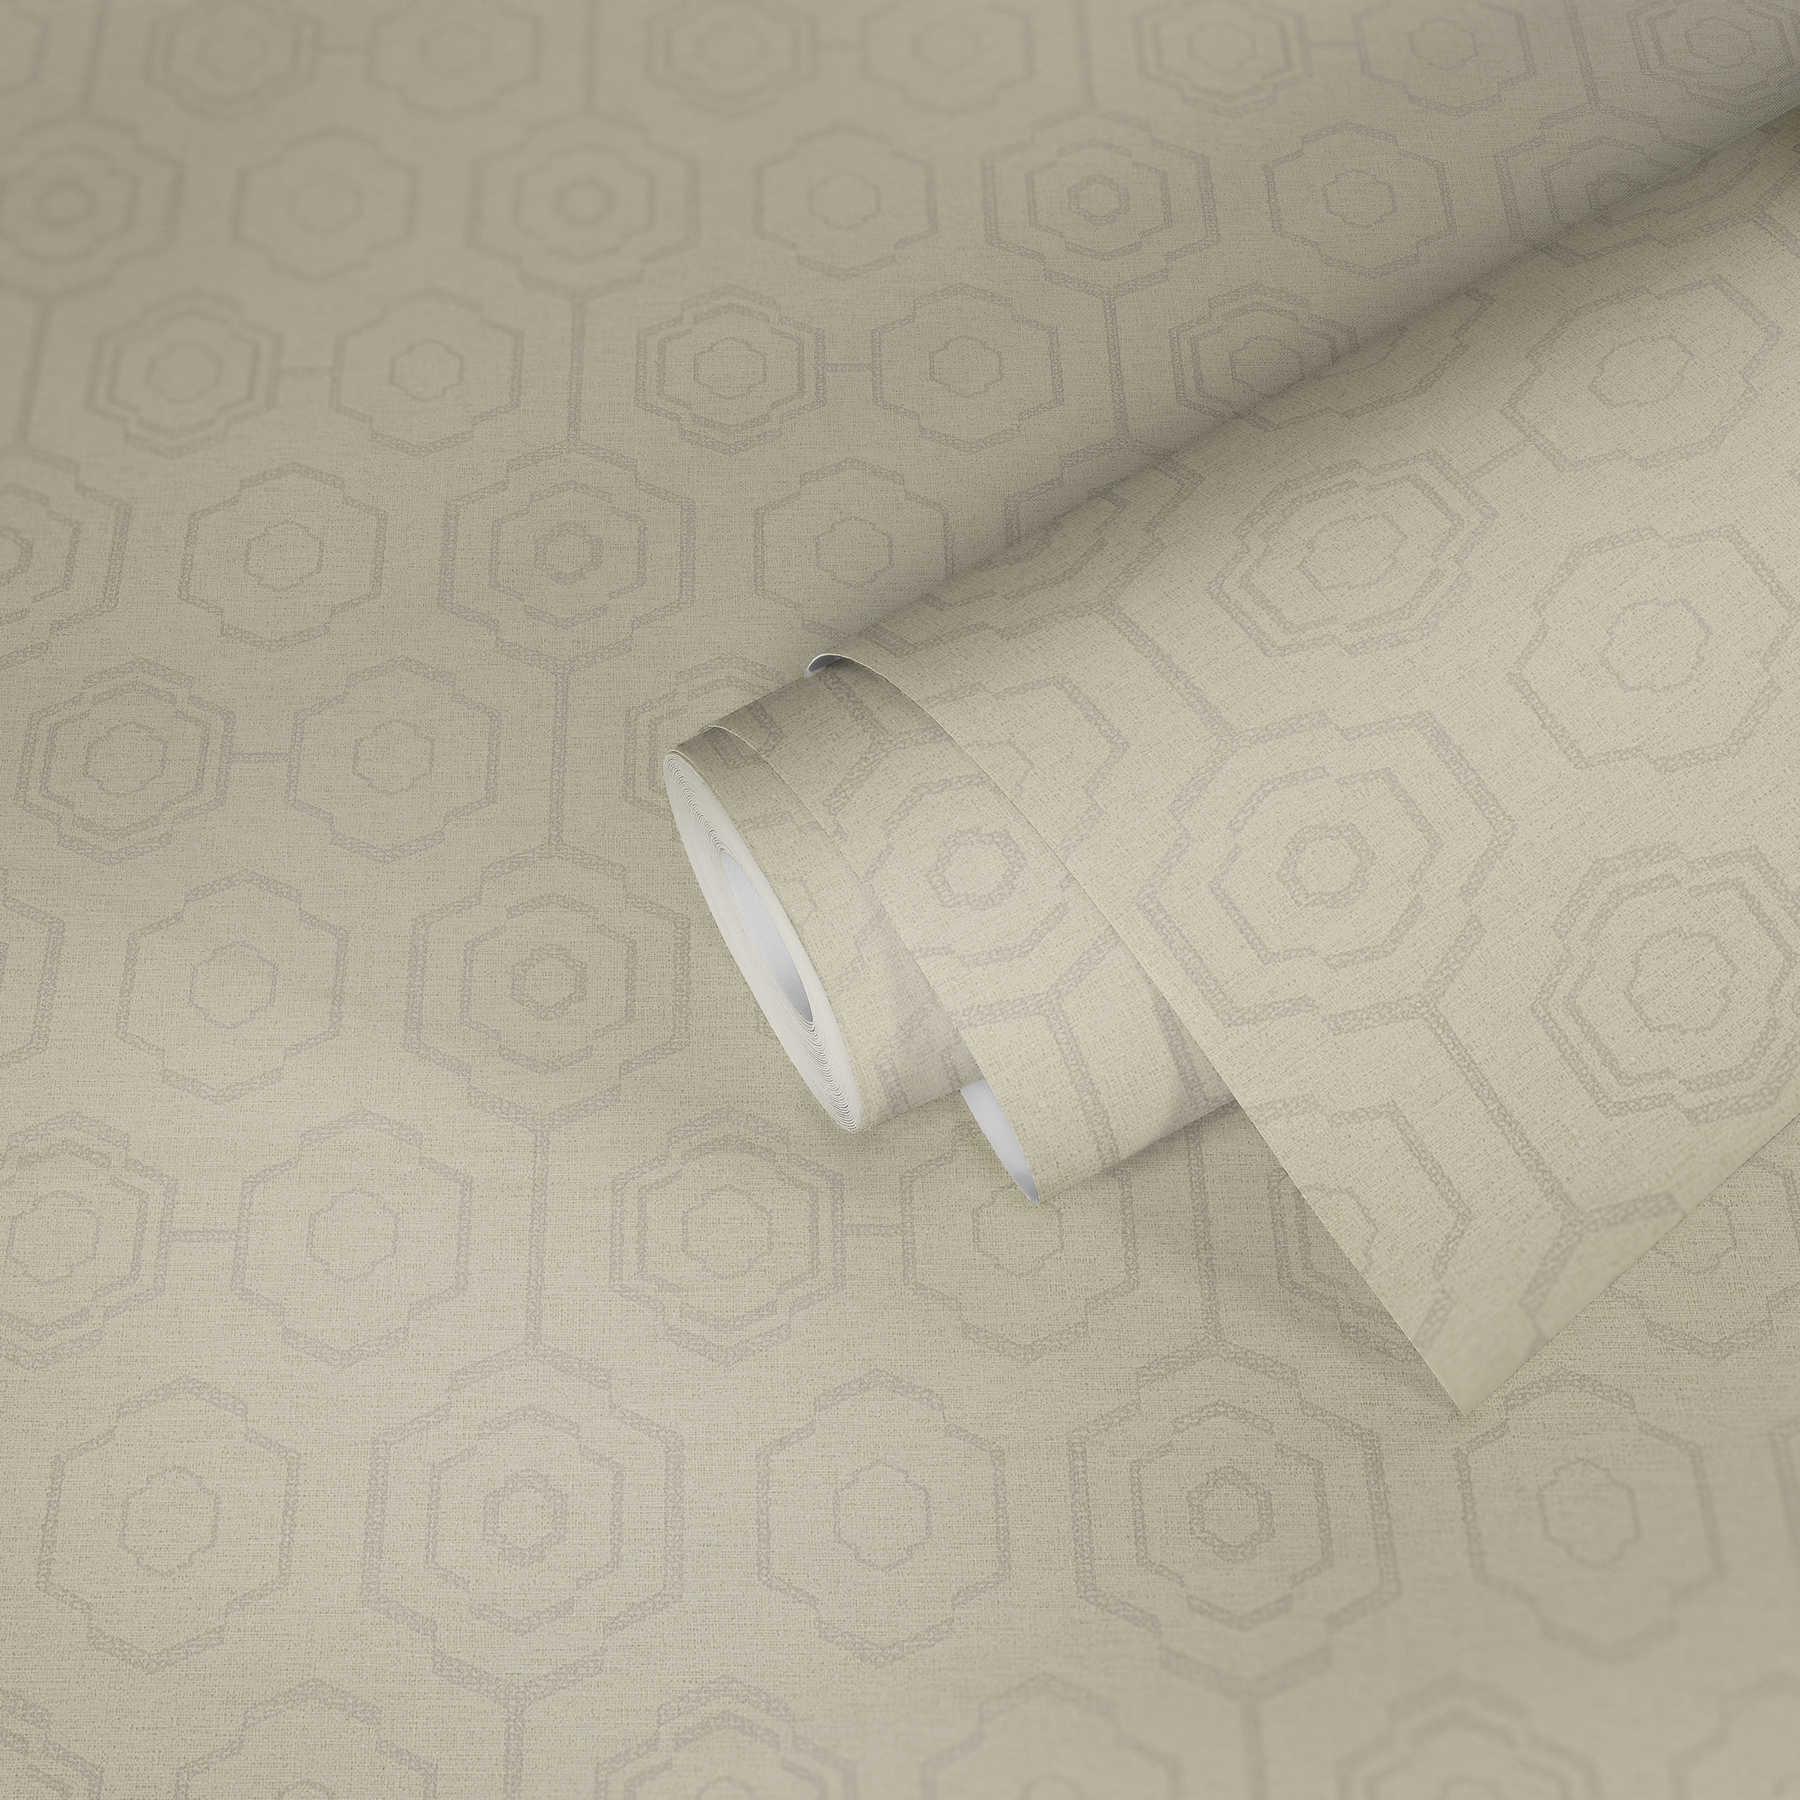             papier peint aspect textile design géométrique & effet brillant - crème, gris, beige
        